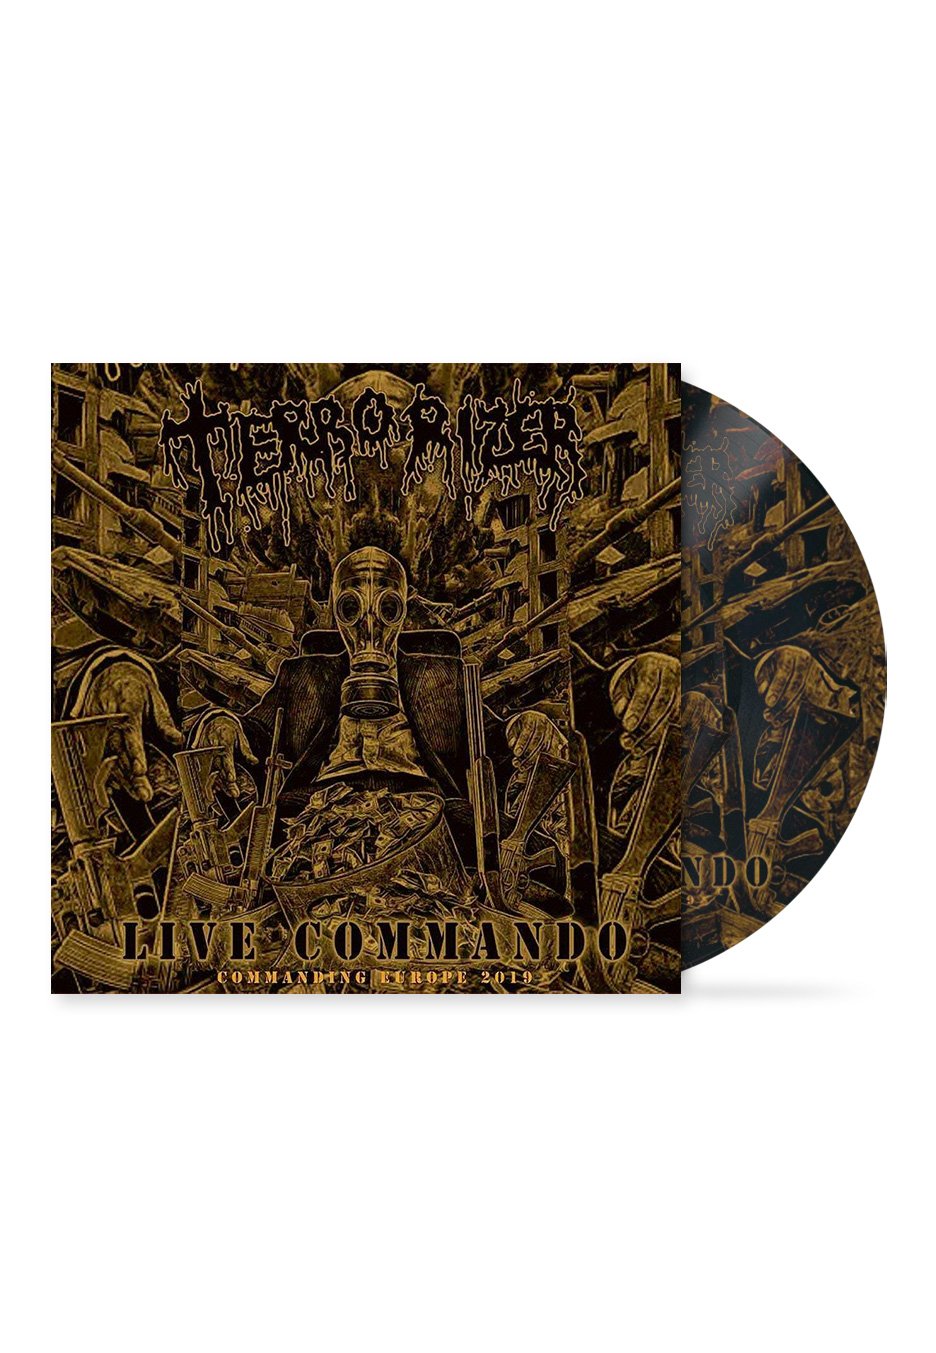 Terrorizer - Live Commando - Picture Vinyl